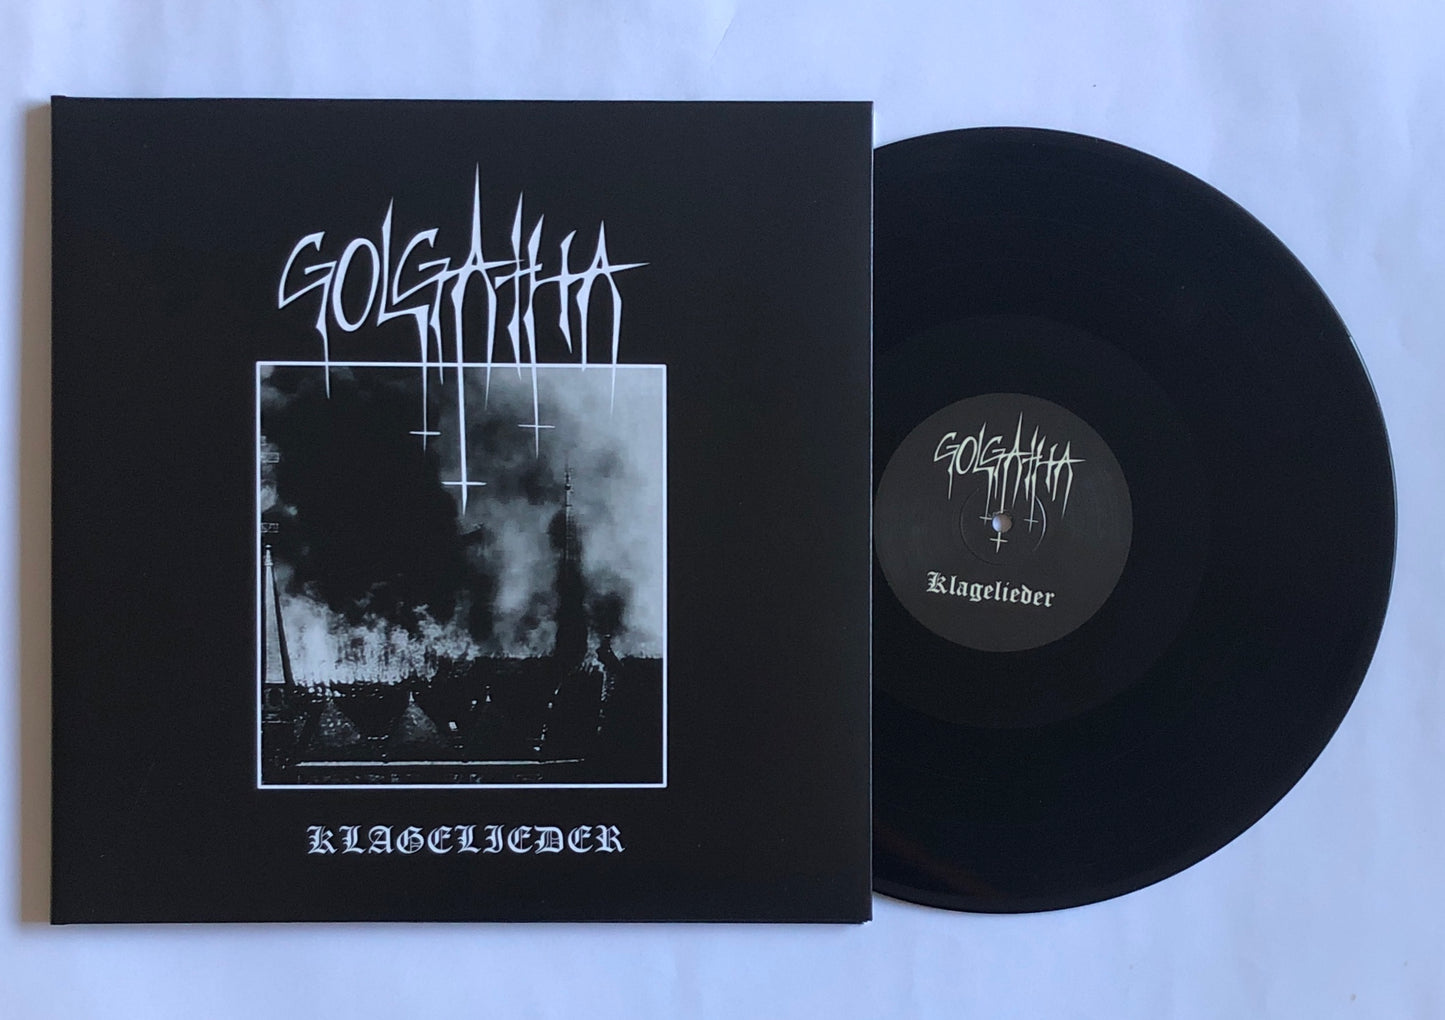 Golgatha (Ger) "Klagelieder" - 12" LP